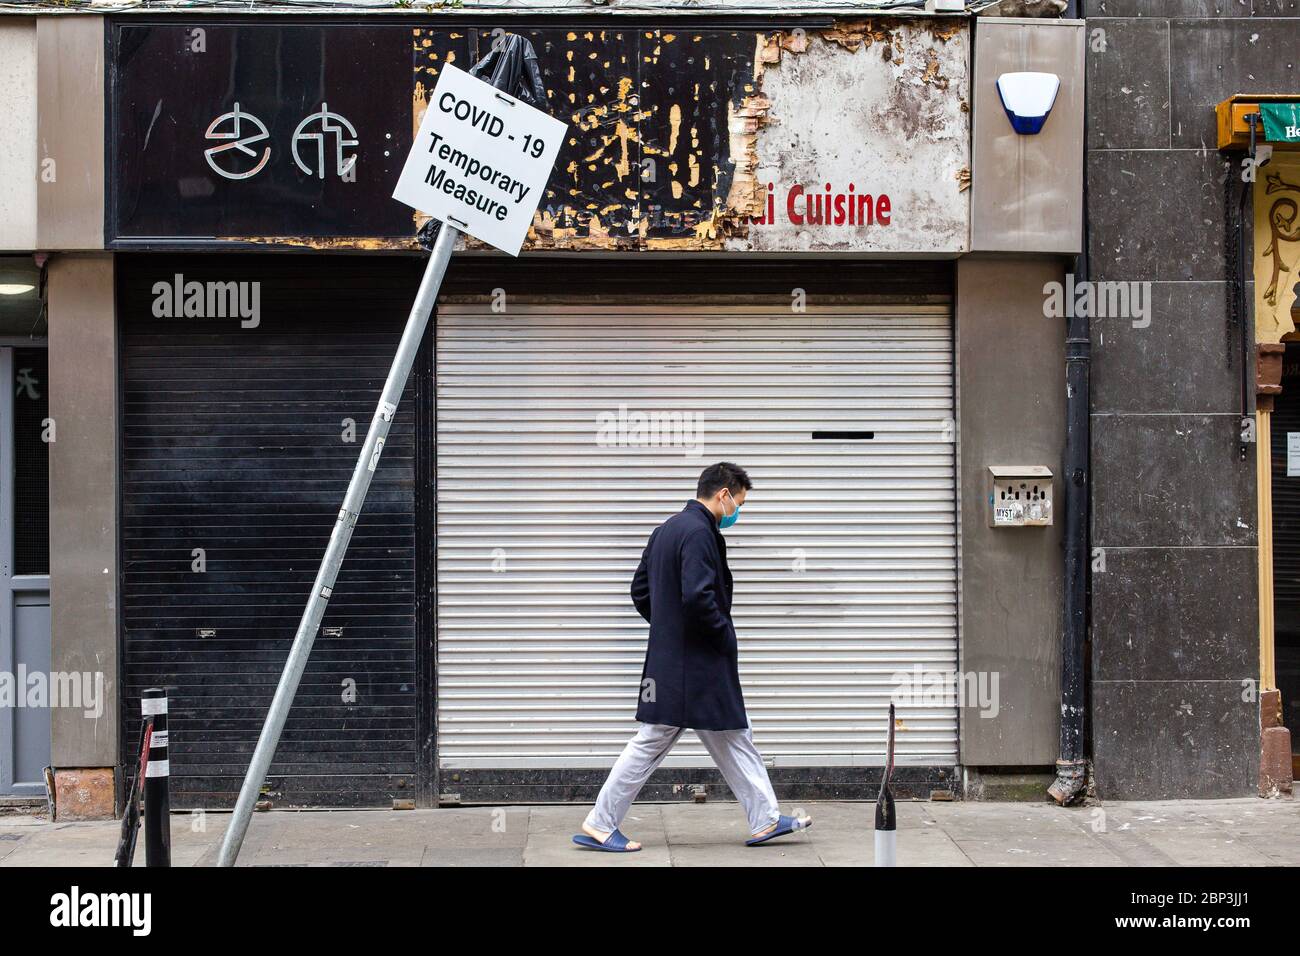 Asiatique Homme portant un masque facial de protection passe par magasin fermé et signe de tendance - Covid-19 mesure temporaire. Coronavirus impact économique Irlande. Banque D'Images